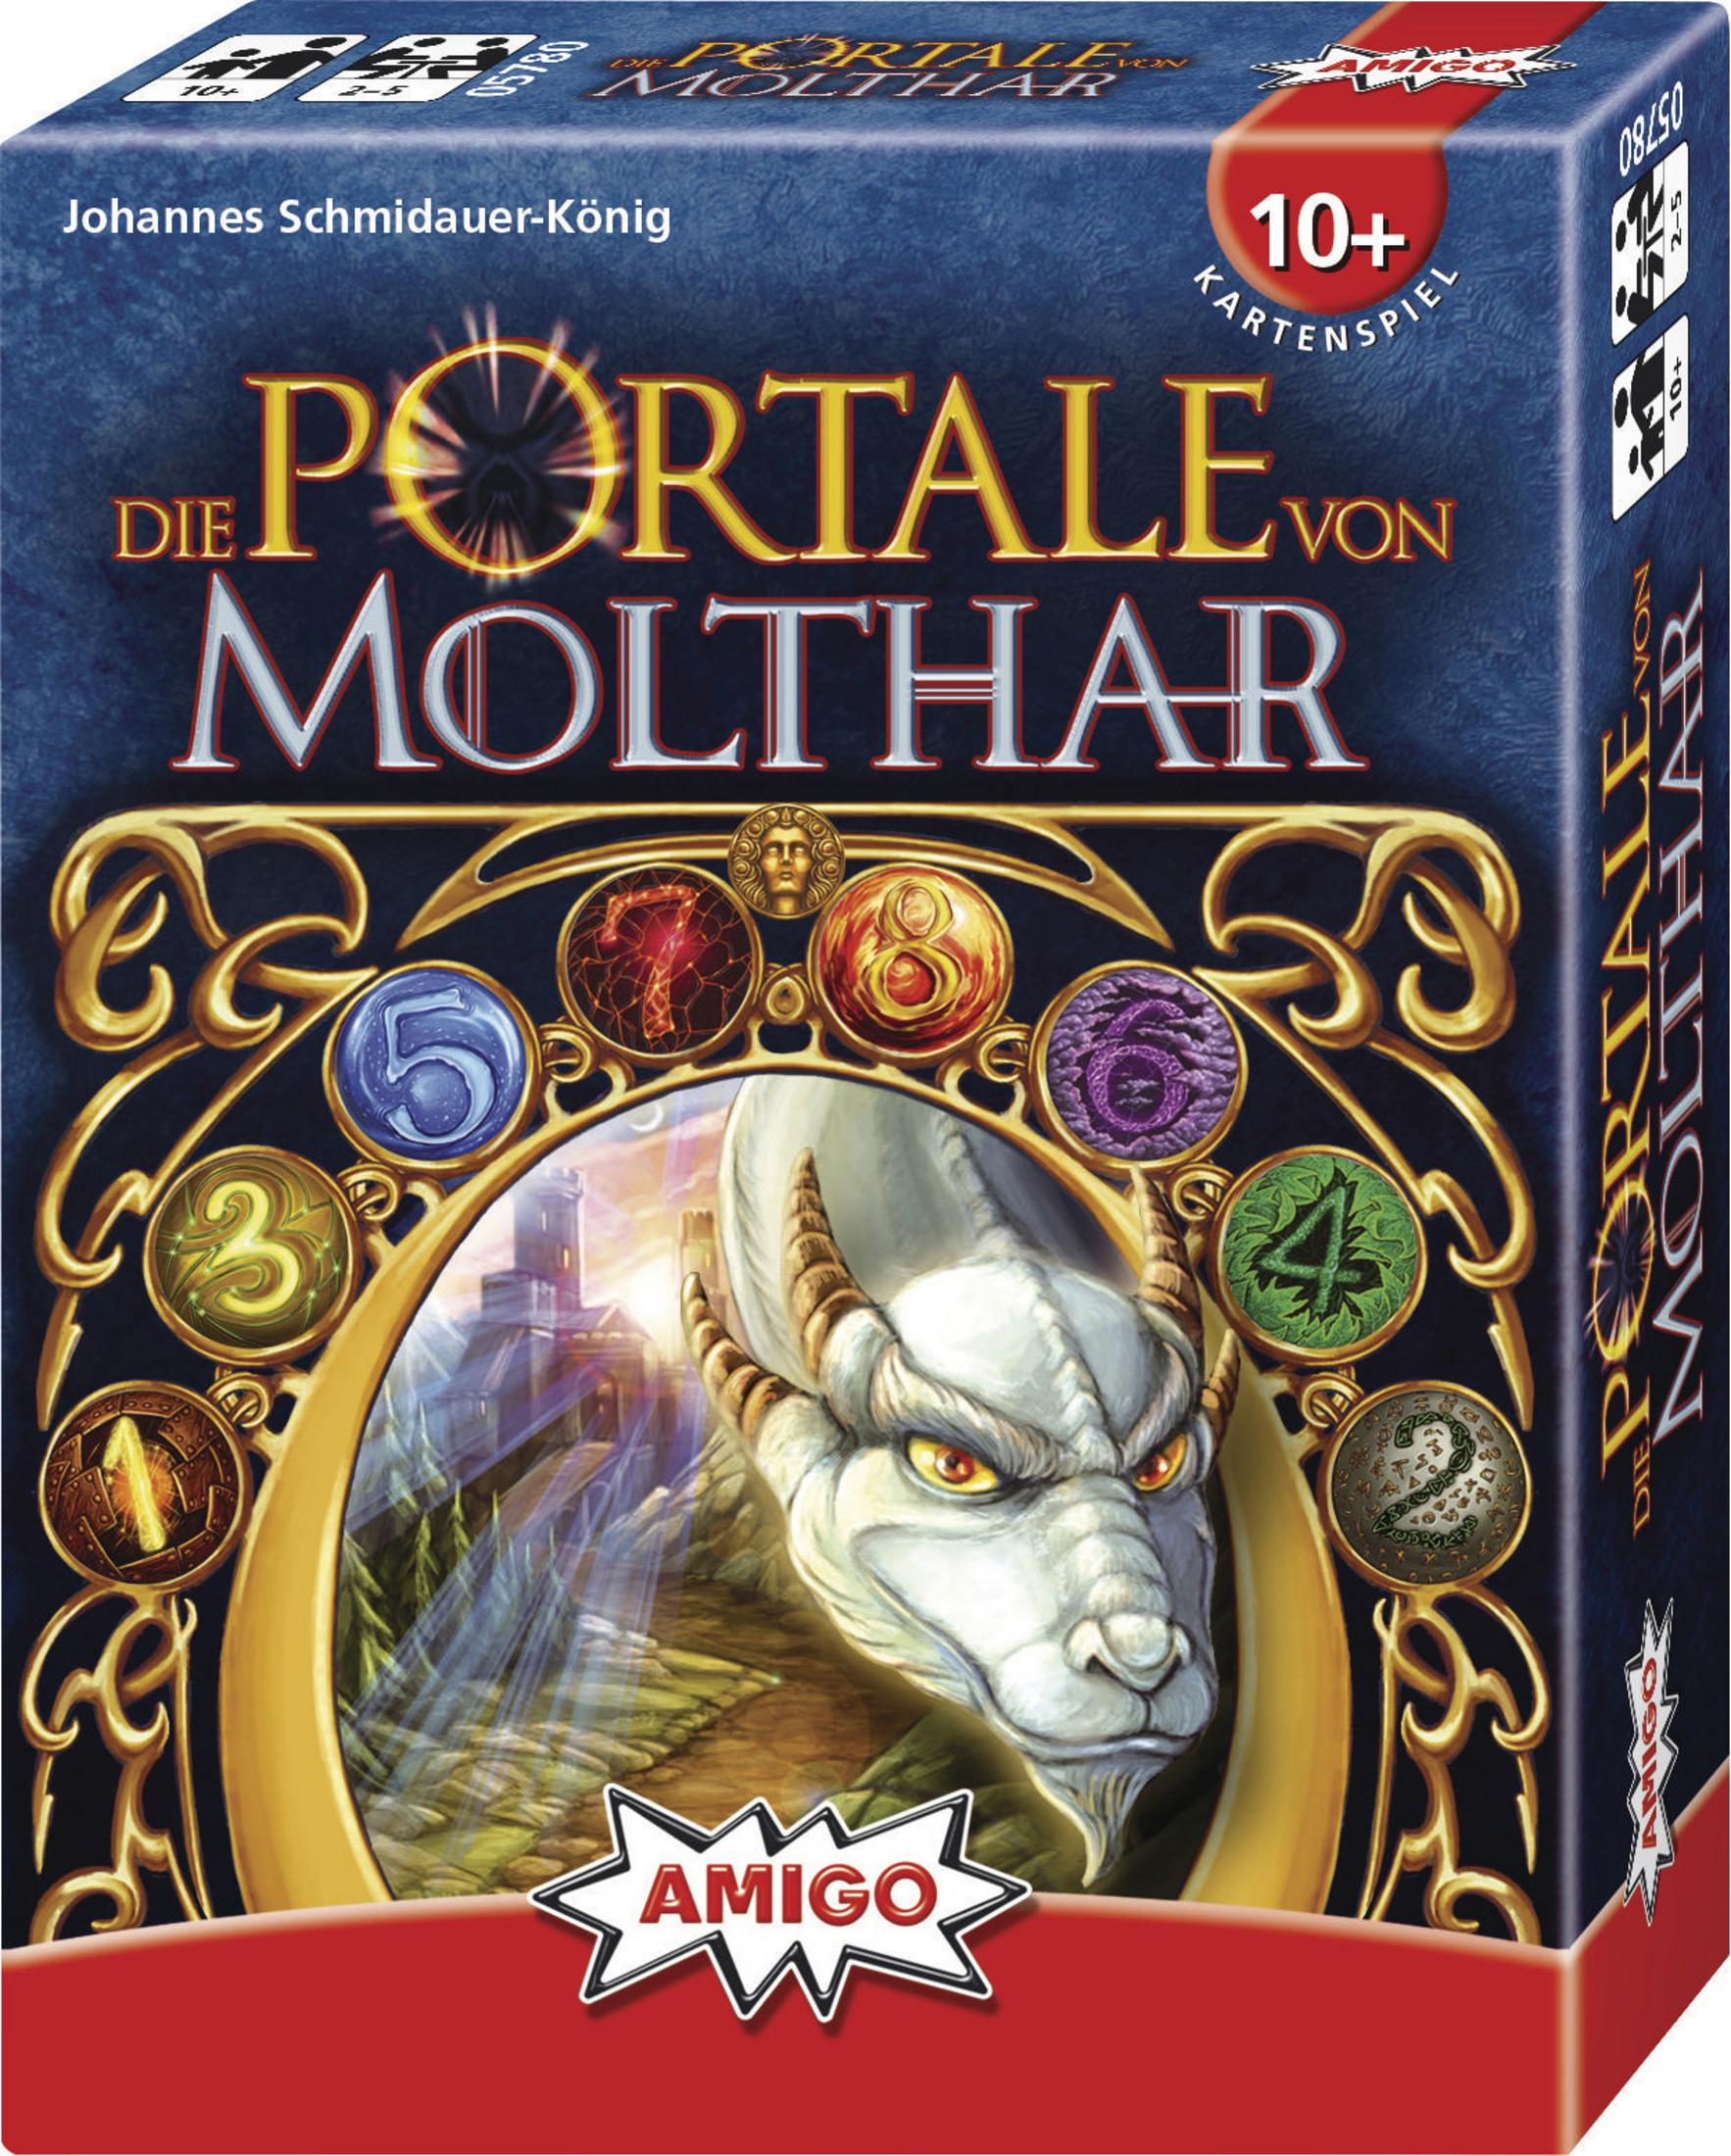 Mehrfarbig PORTALE MOLTHAR 05780 Kartenspiel DIE VON AMIGO